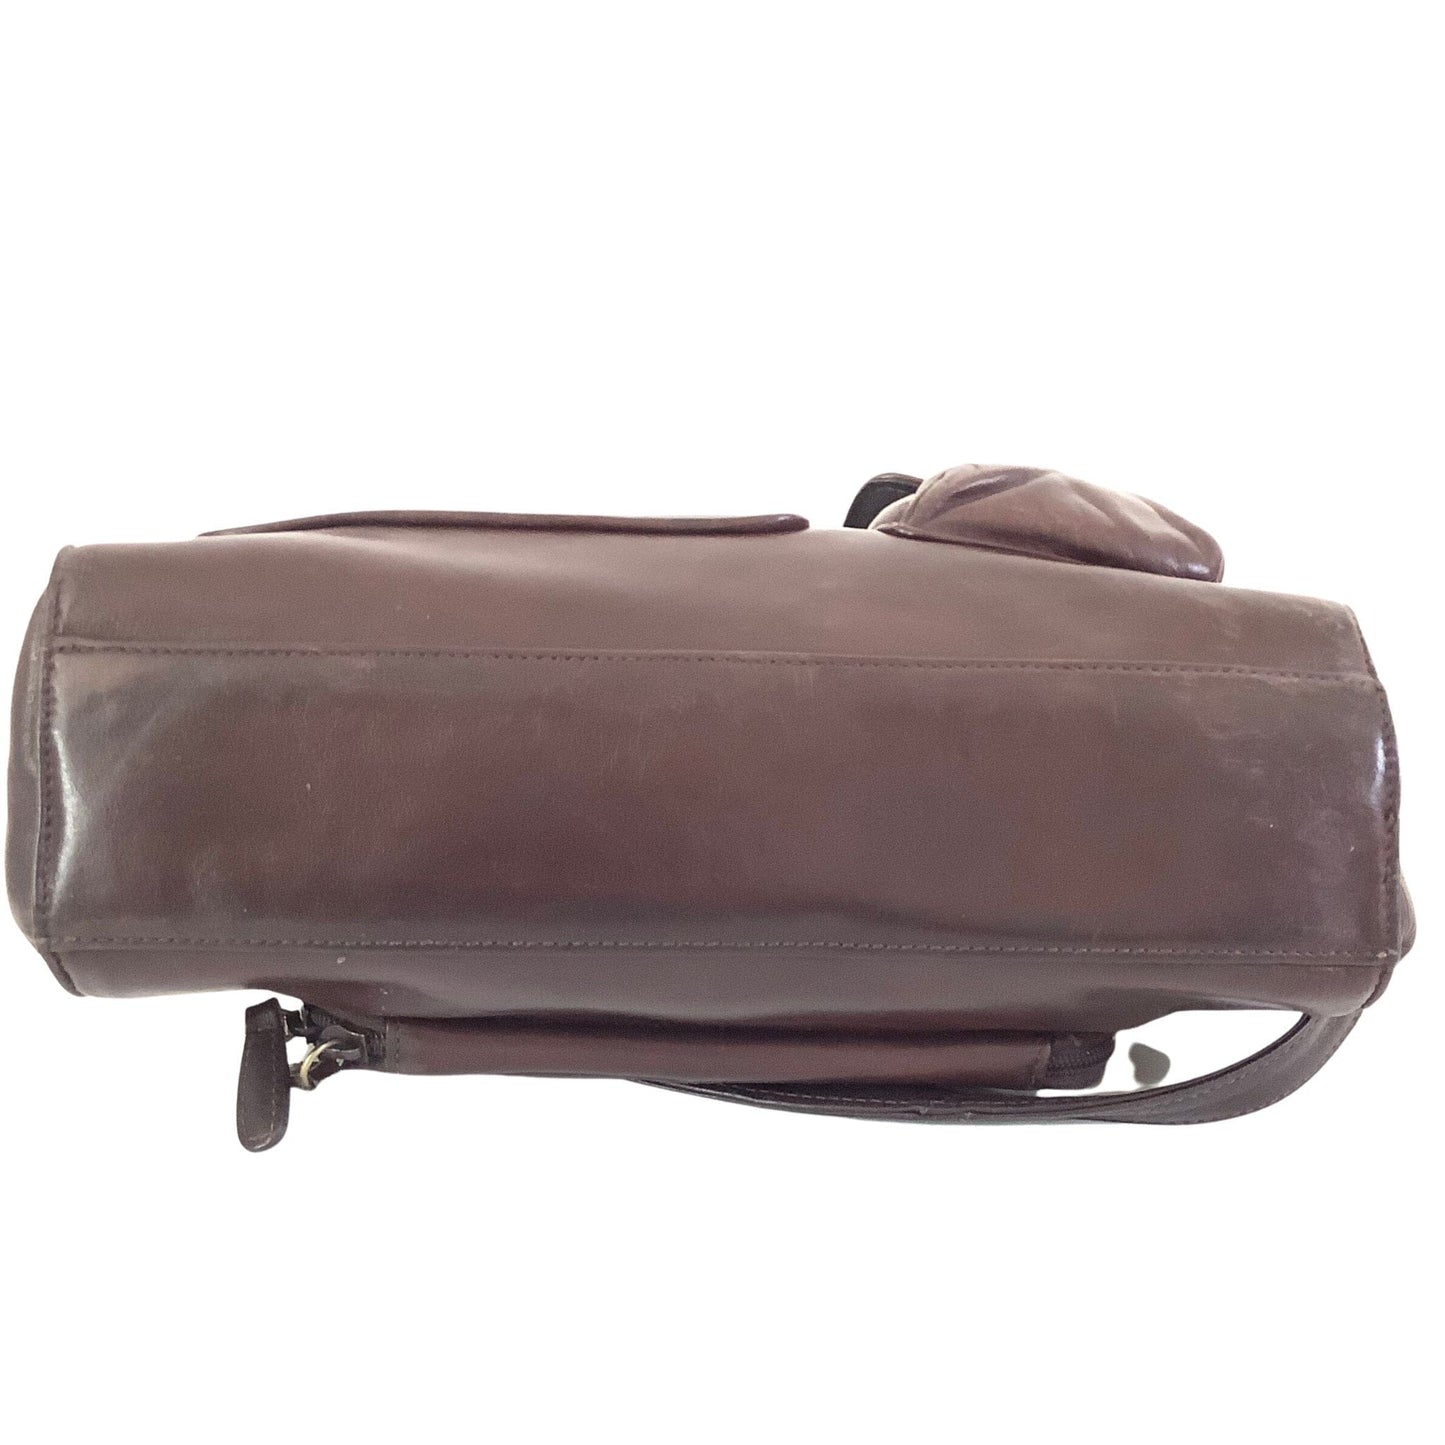 Fossil Shoulder Bag Brown / Leather / Vintage 1990s